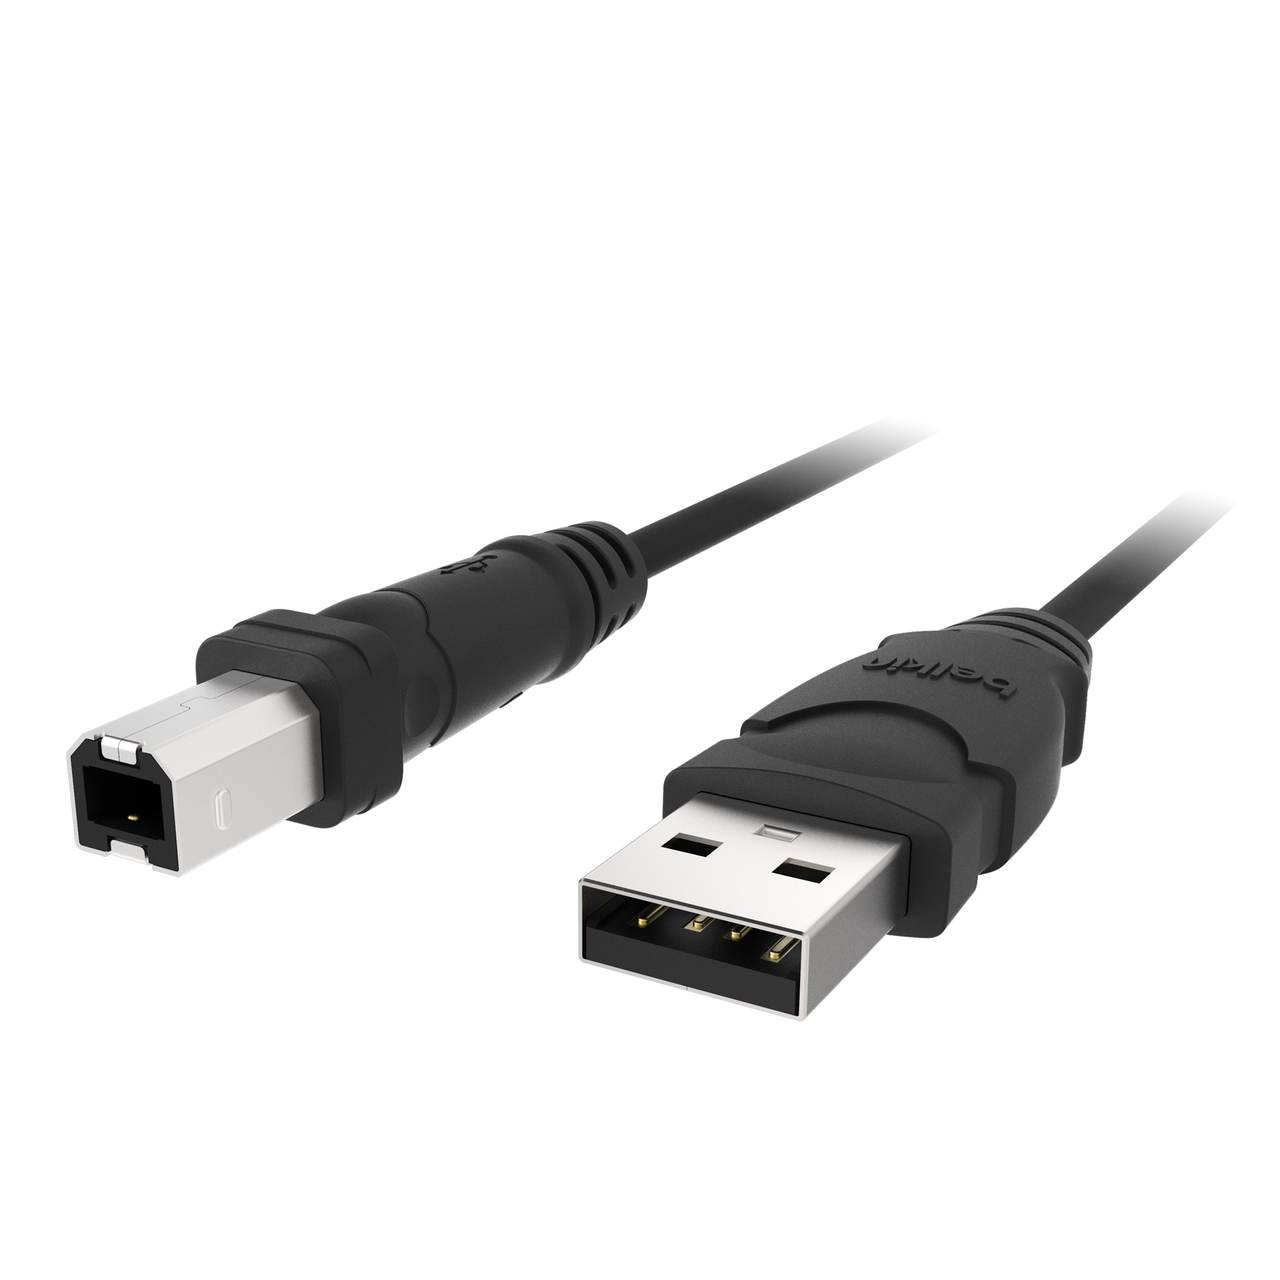 Ik wil niet Effectiviteit Cirkel 2.0 USB-A to USB-B Cable - 3ft | Belkin | Belkin: US